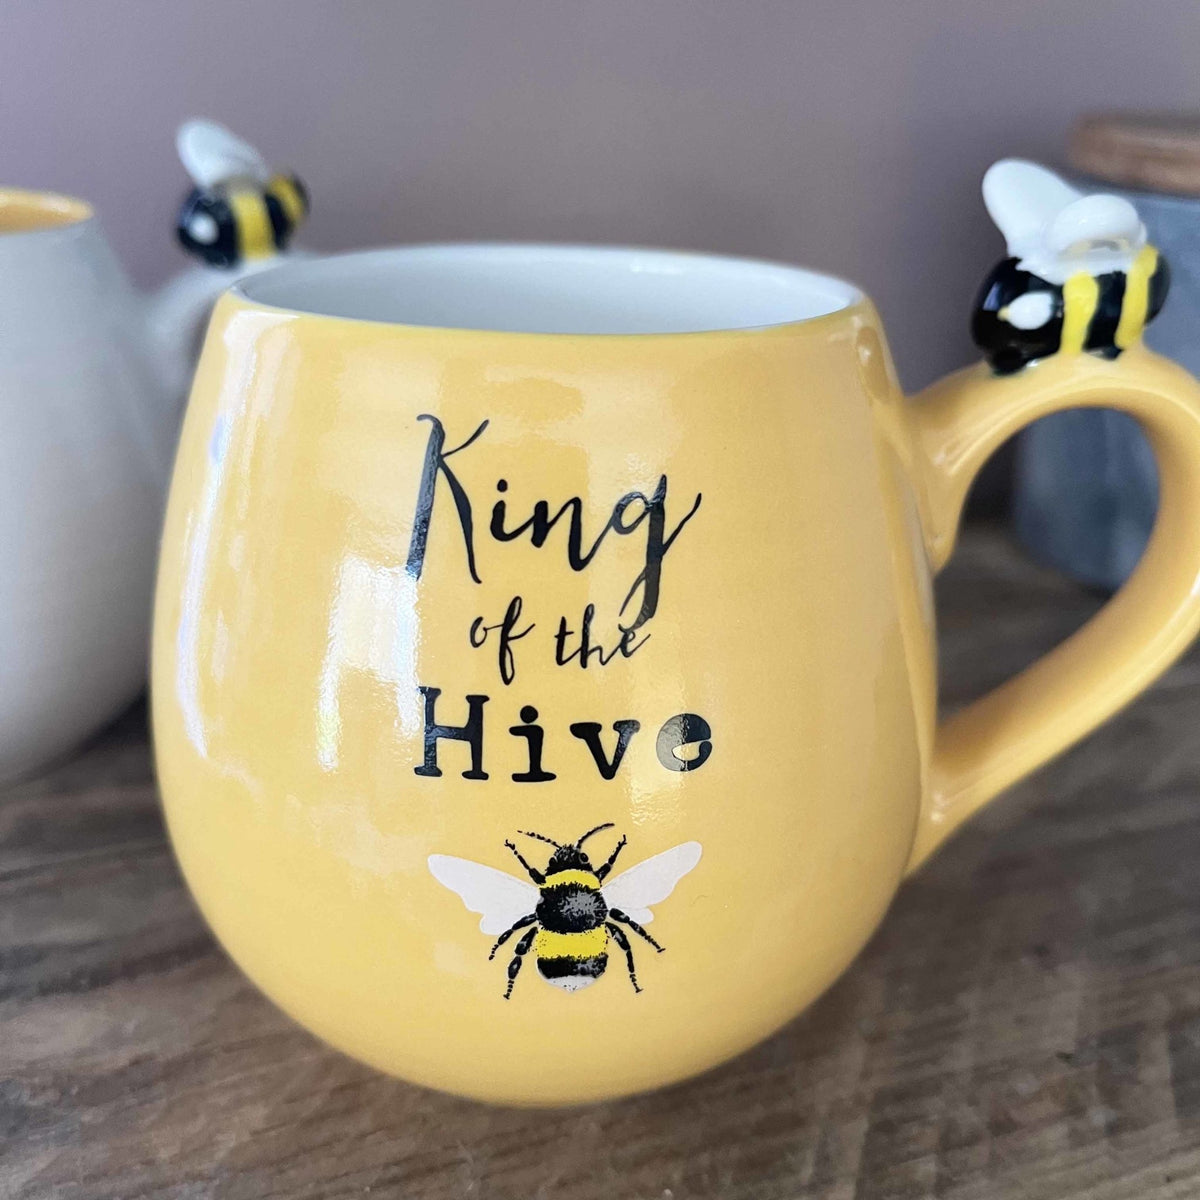 Bee Happy Queen & King Mug Set - Cherish Home